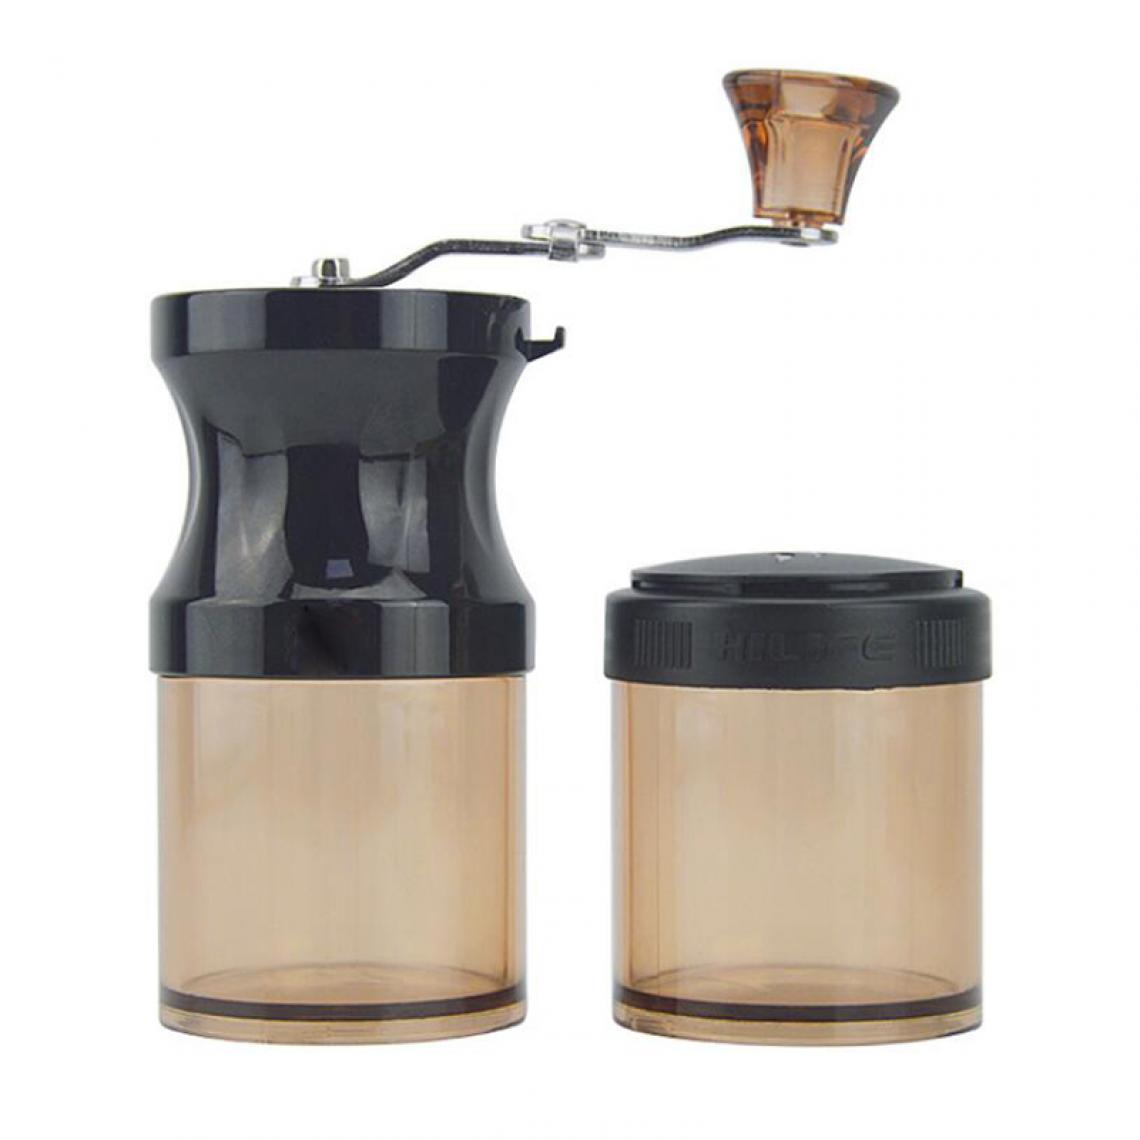 Universal - Réservoir de stockage renforcé pour broyeur à grains de café manuel Moulin à grains de café durable Outil de cuisine(brun) - Moulin à café